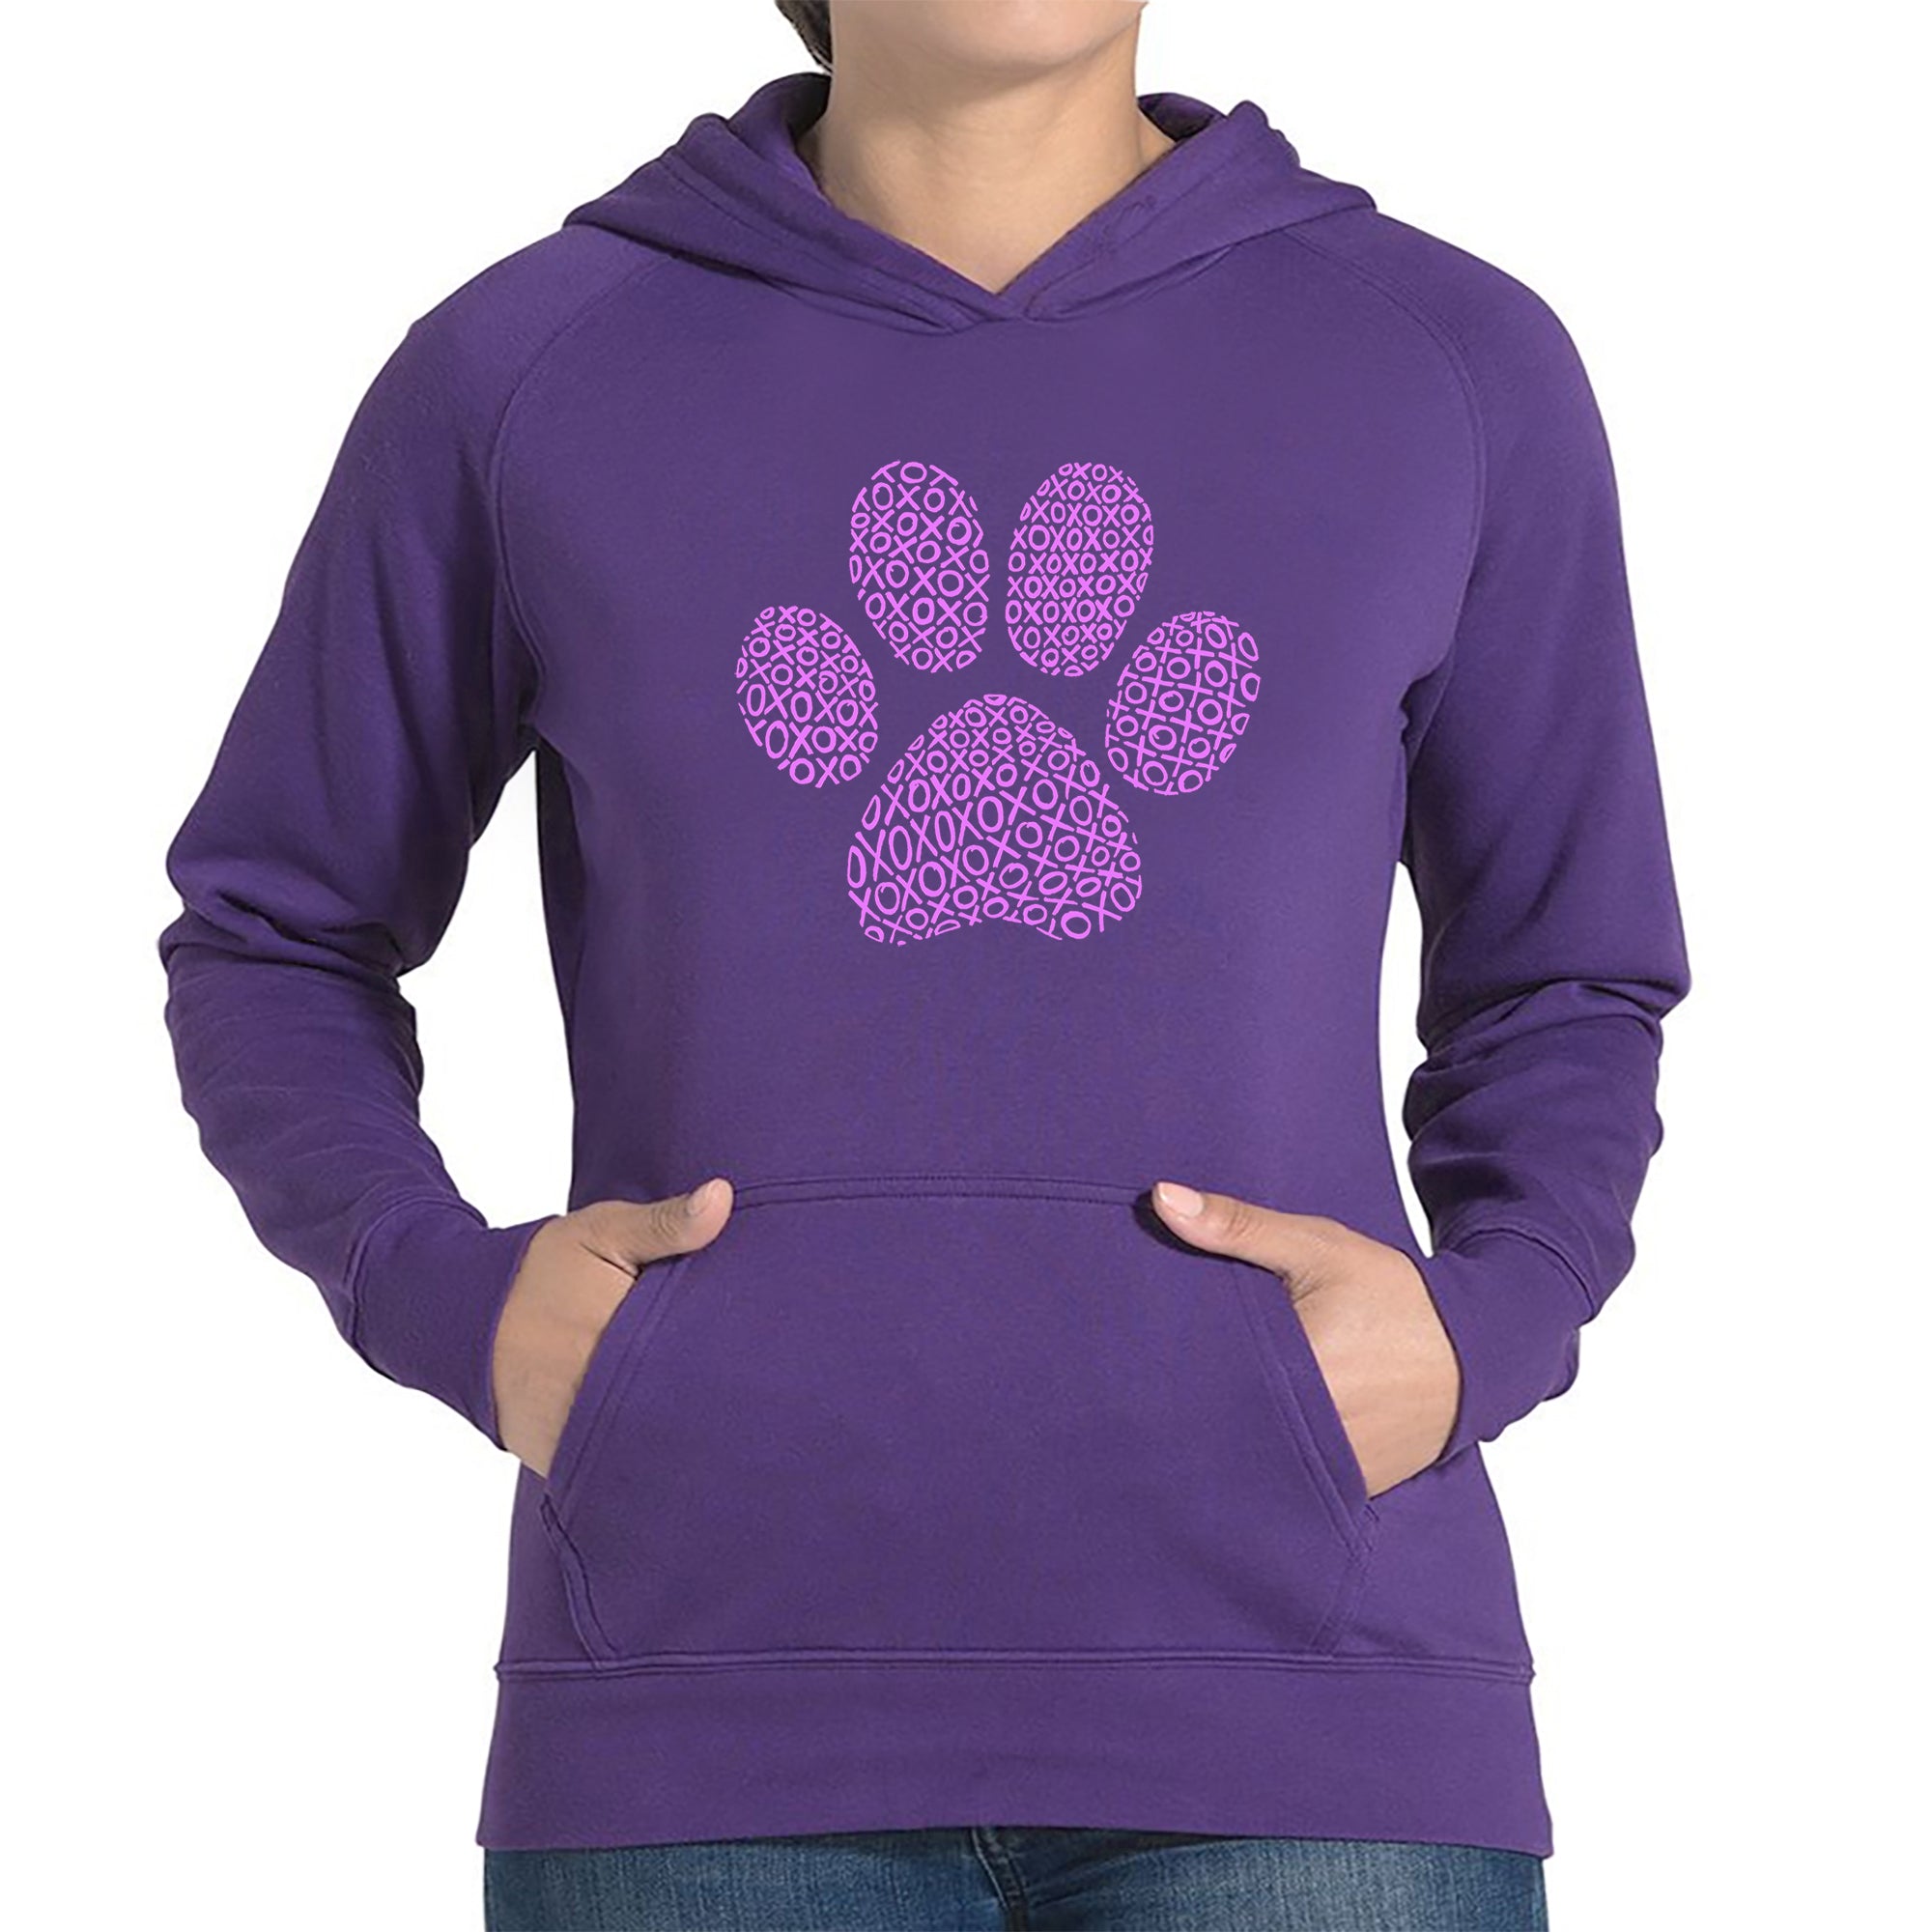 XOXO Dog Paw - Women's Word Art Hooded Sweatshirt - Purple - Small